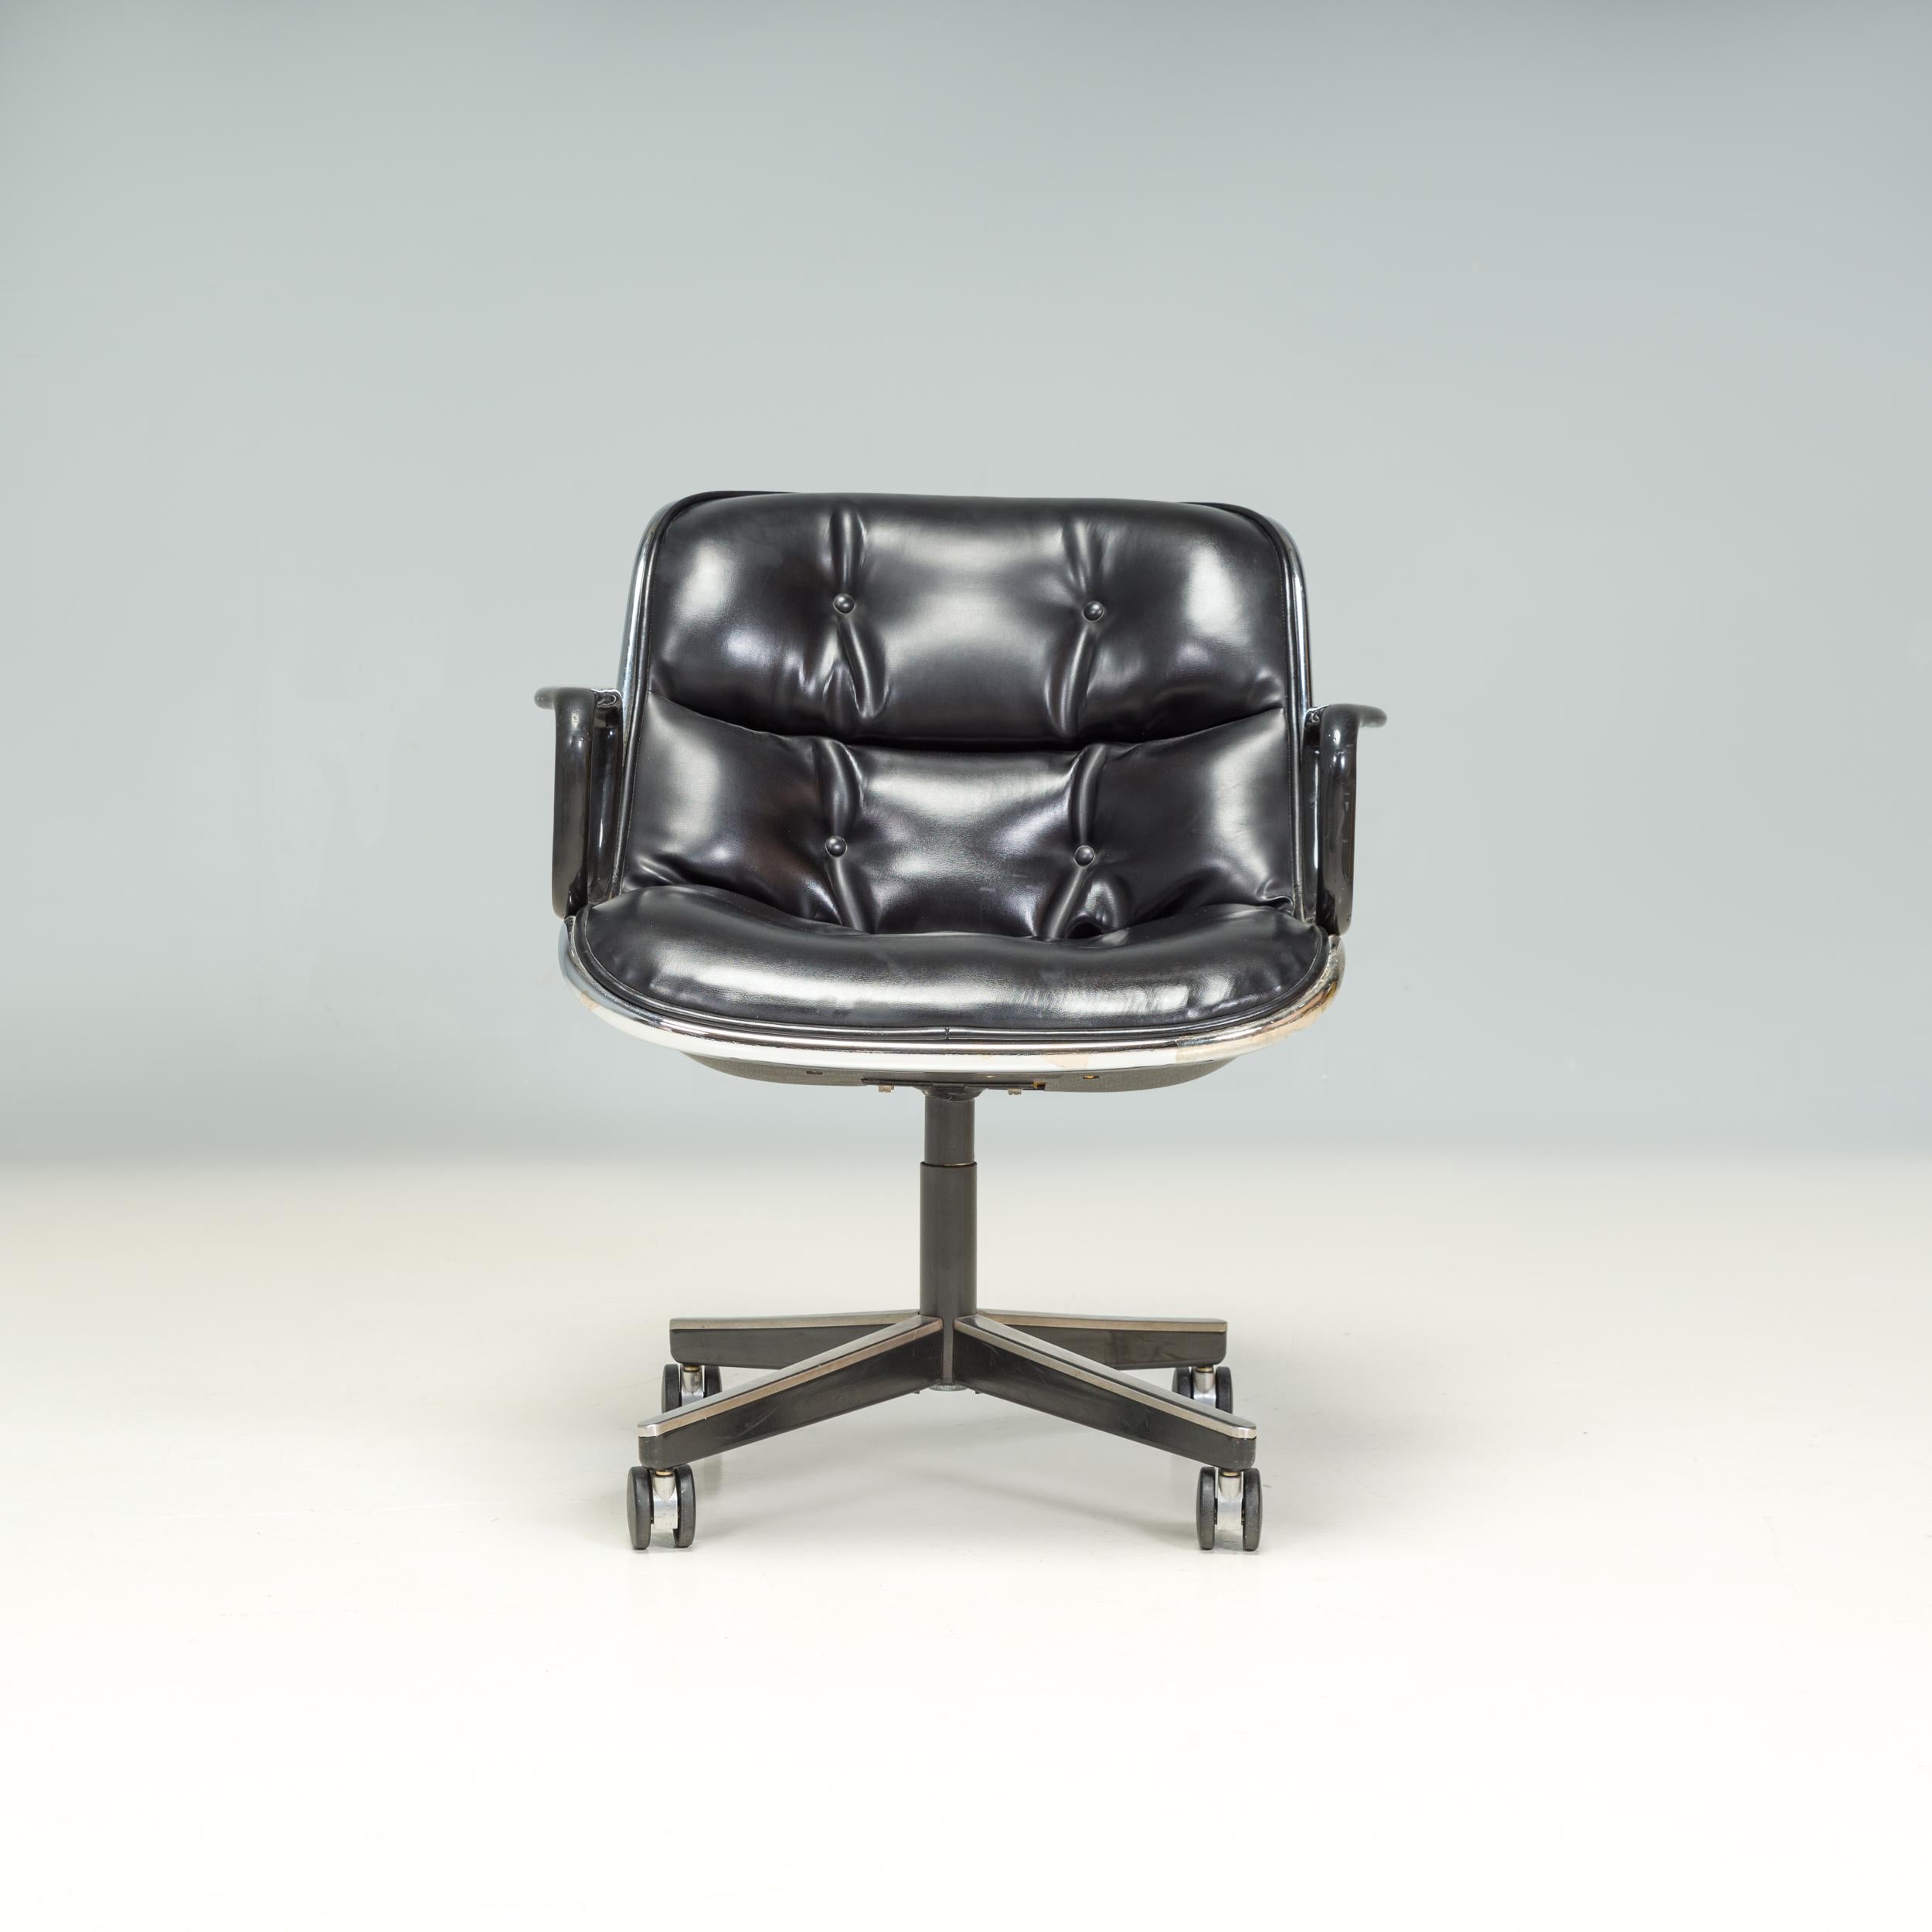 Italian Knoll Black Leather Pollock Executive Office Chair, 1960's